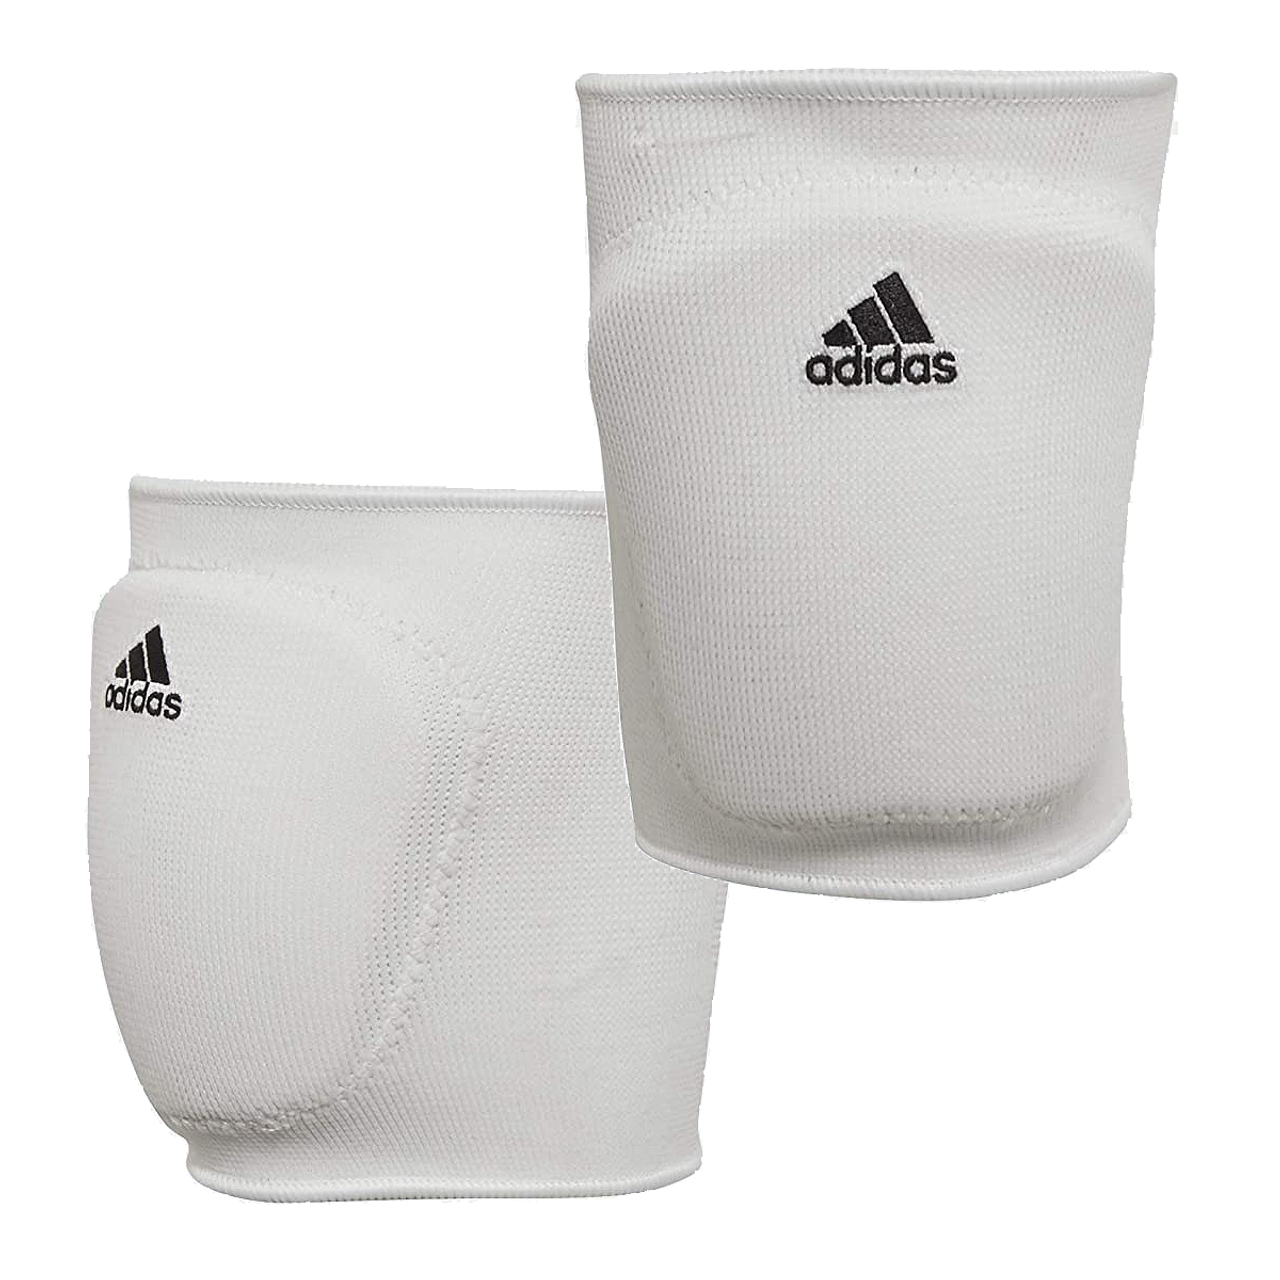 adidas volleyball knee pads